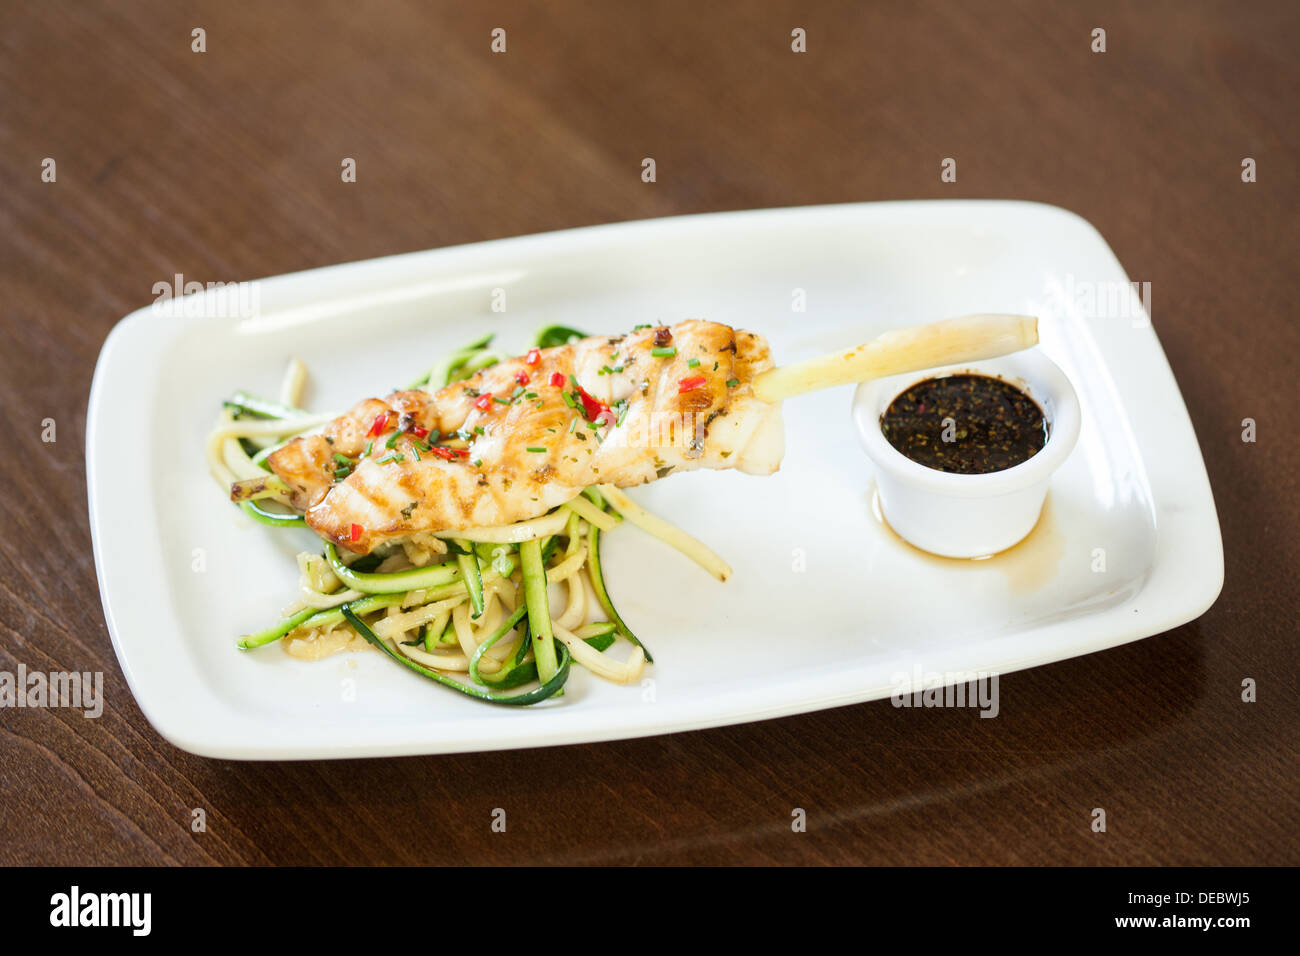 Asiatisch inspirierte Fischgericht mit Nudeln und Julienne-Gemüse Stockfoto